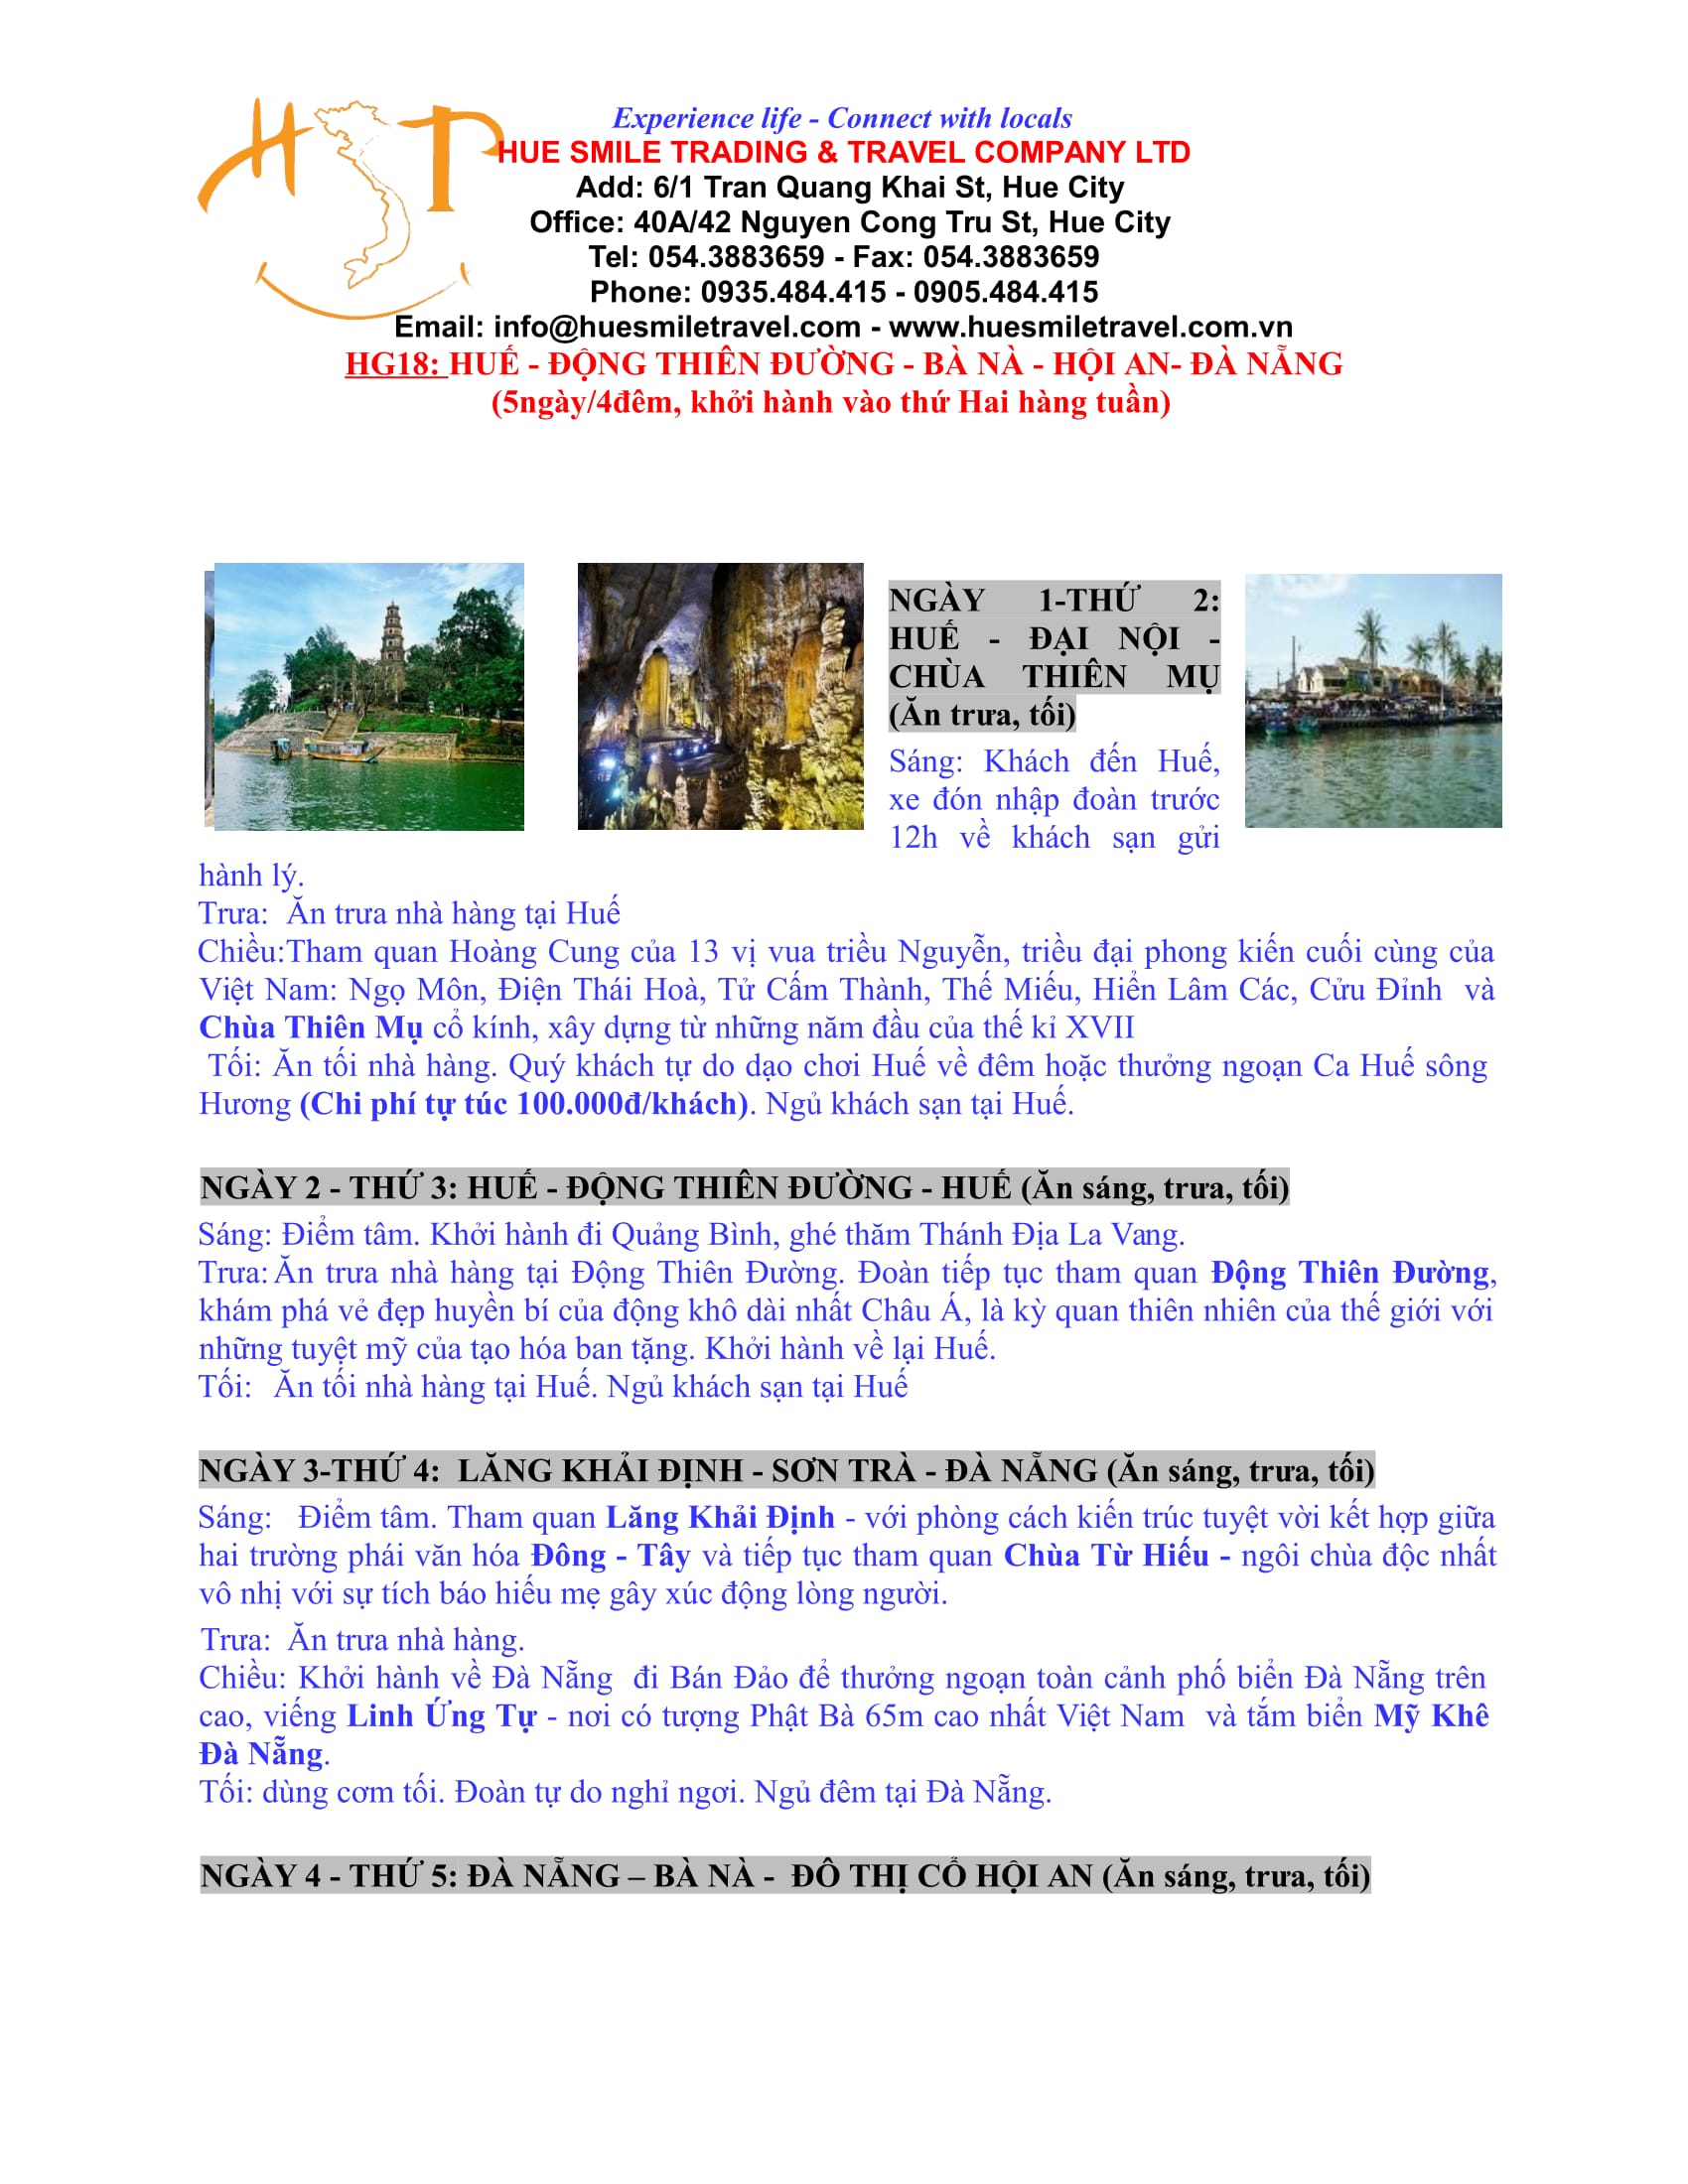 Tour Huế - Động Thiên Đường - Bà Nà - Hội An - Đà Nẵng